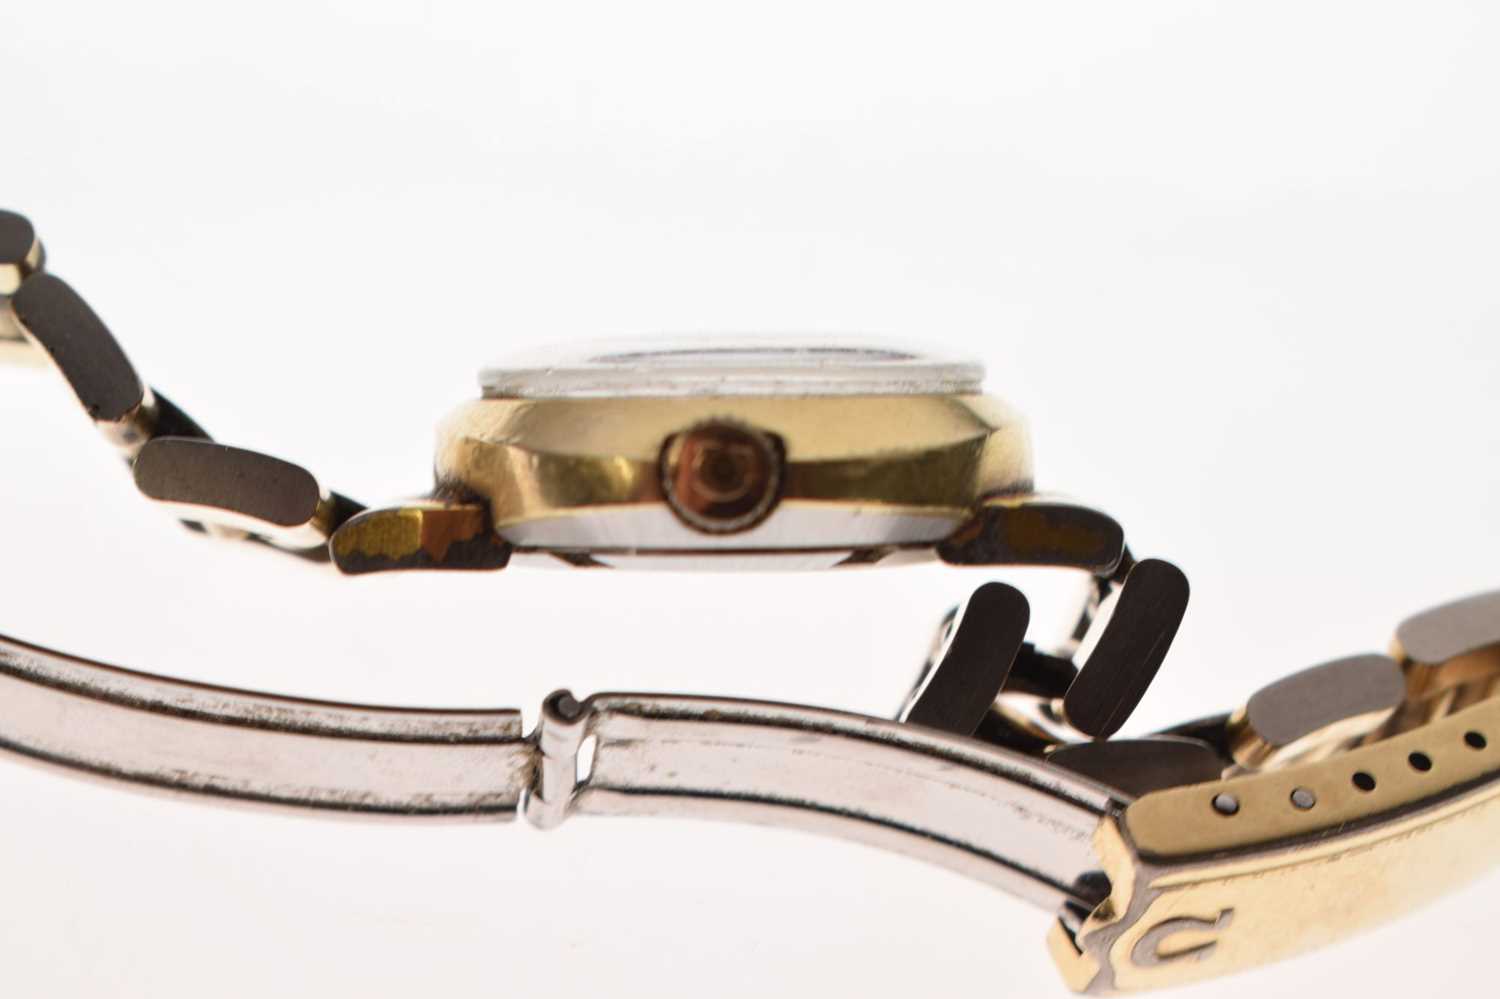 Omega - Lady's circa 1970s Genève 'Dynamic' bracelet watch - Image 5 of 11